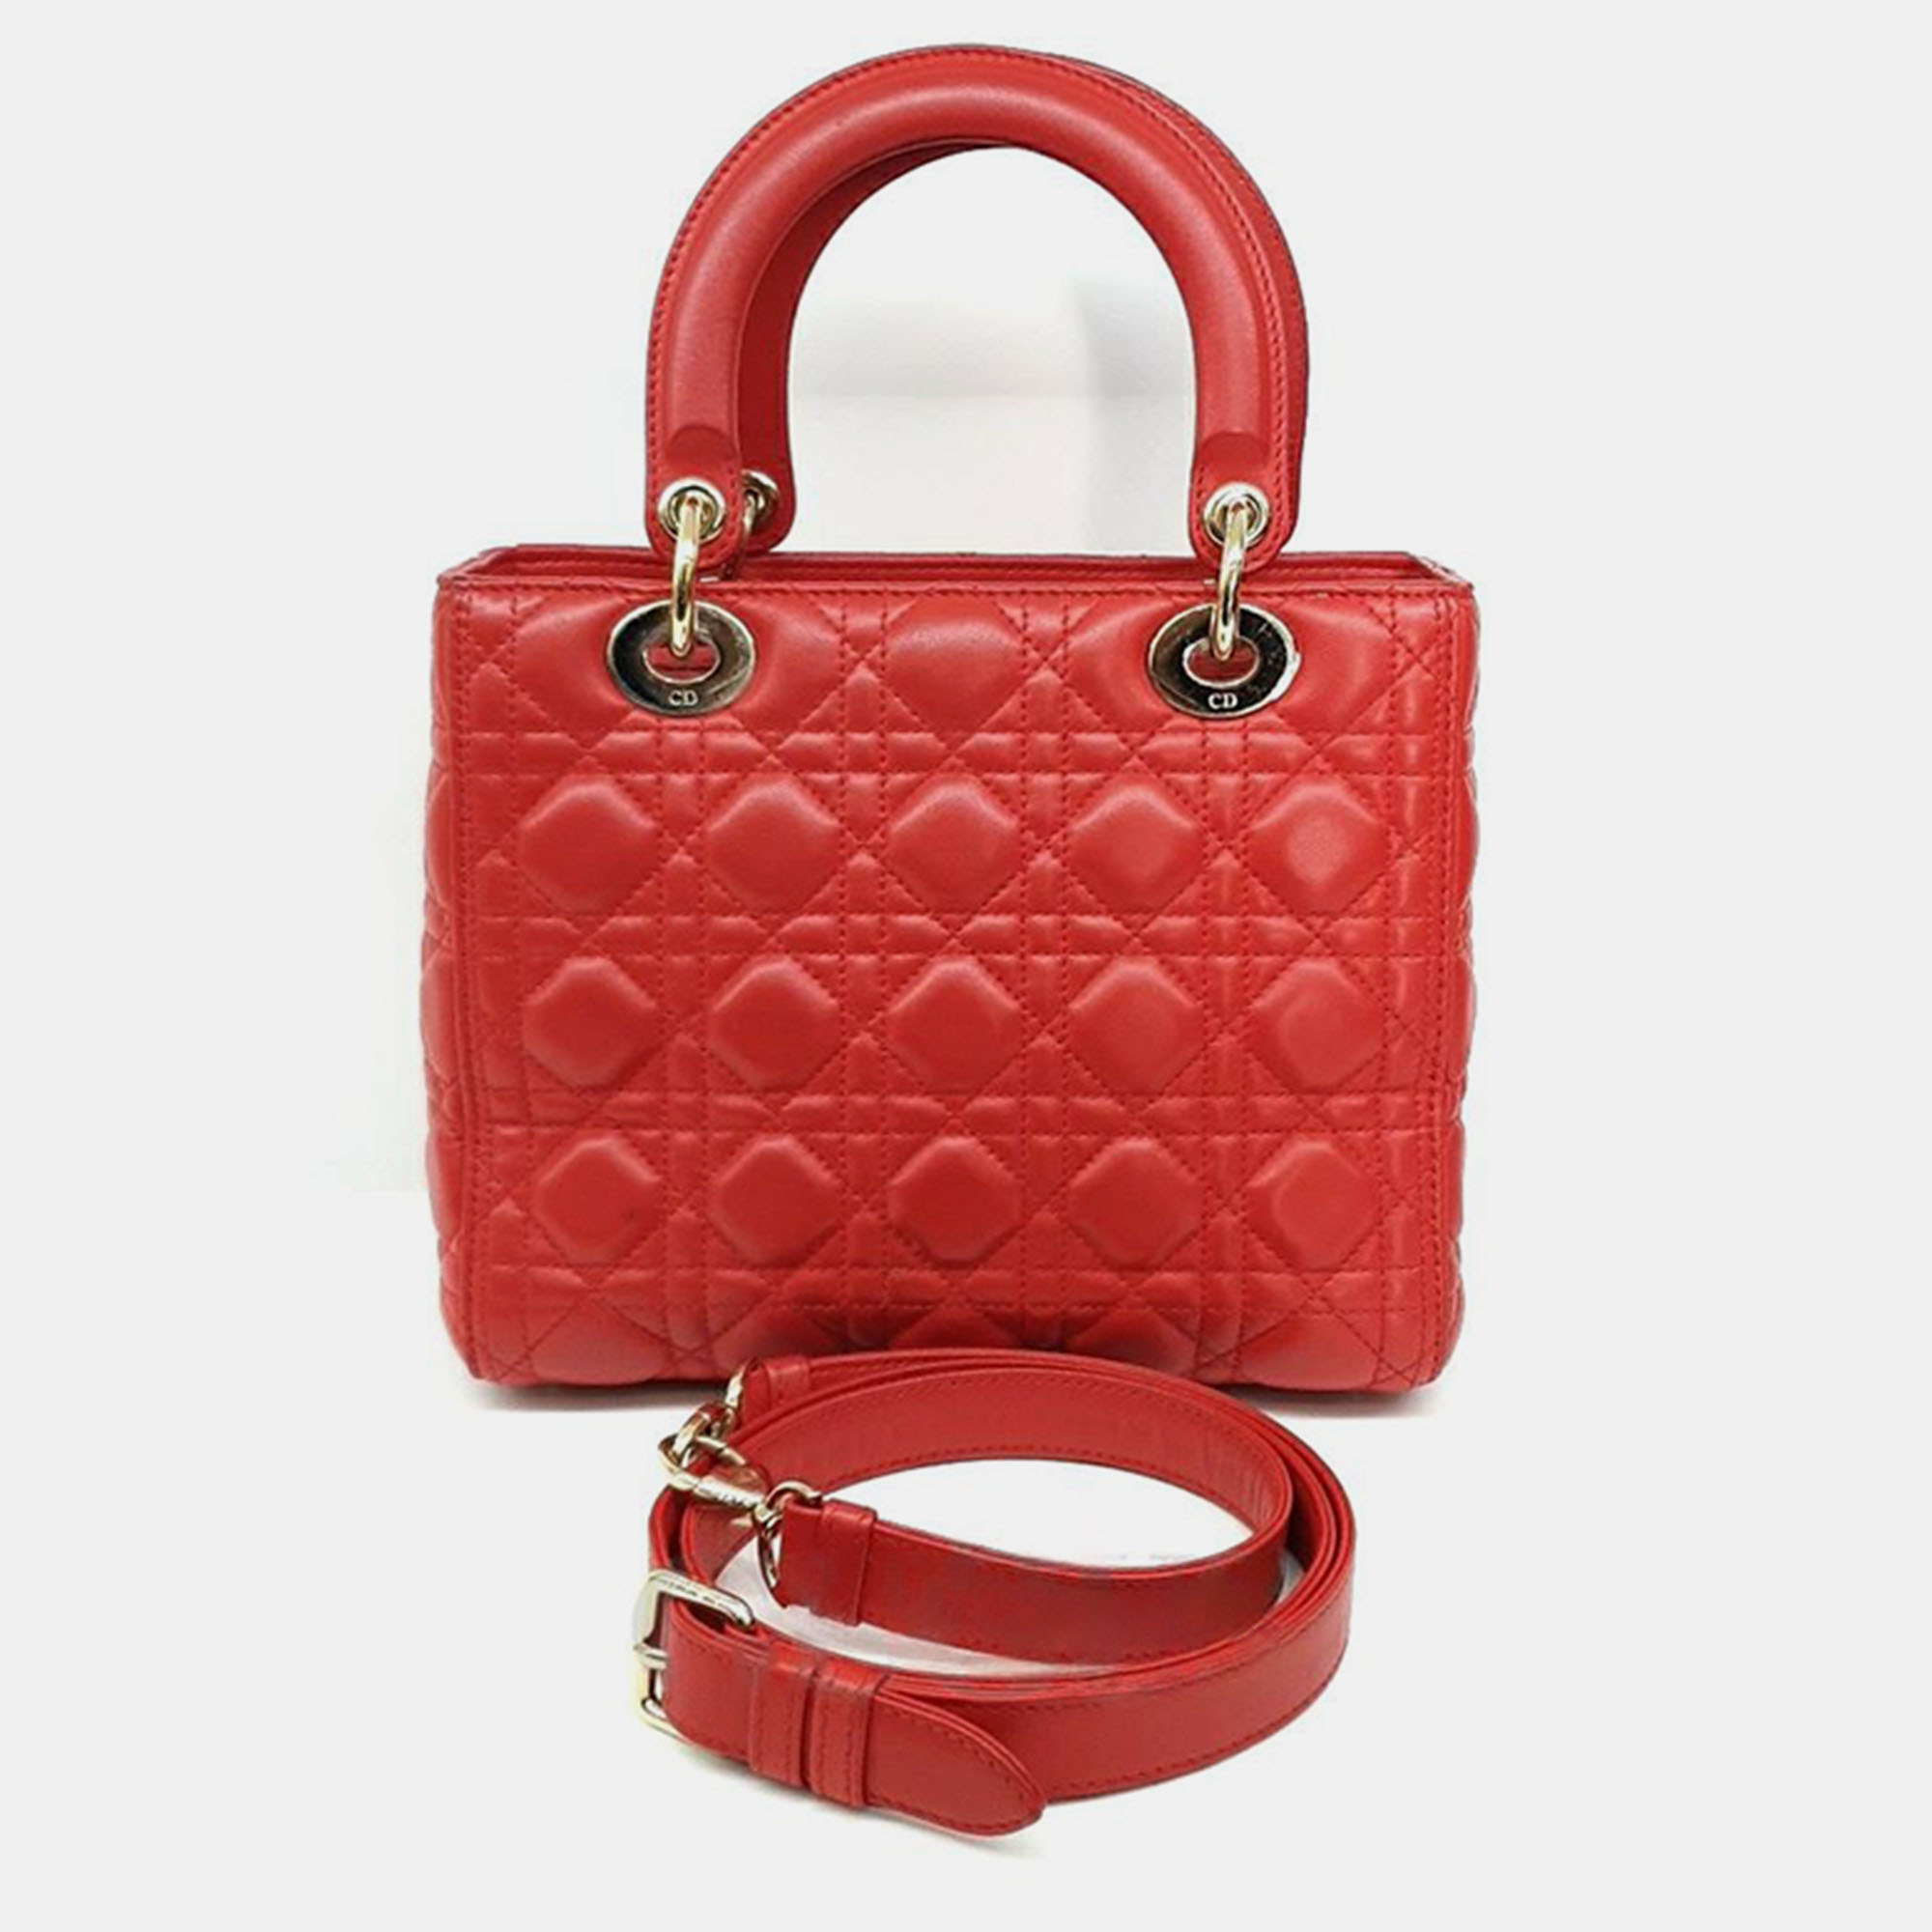 Christian Dior Cannage Lady Bag Medium